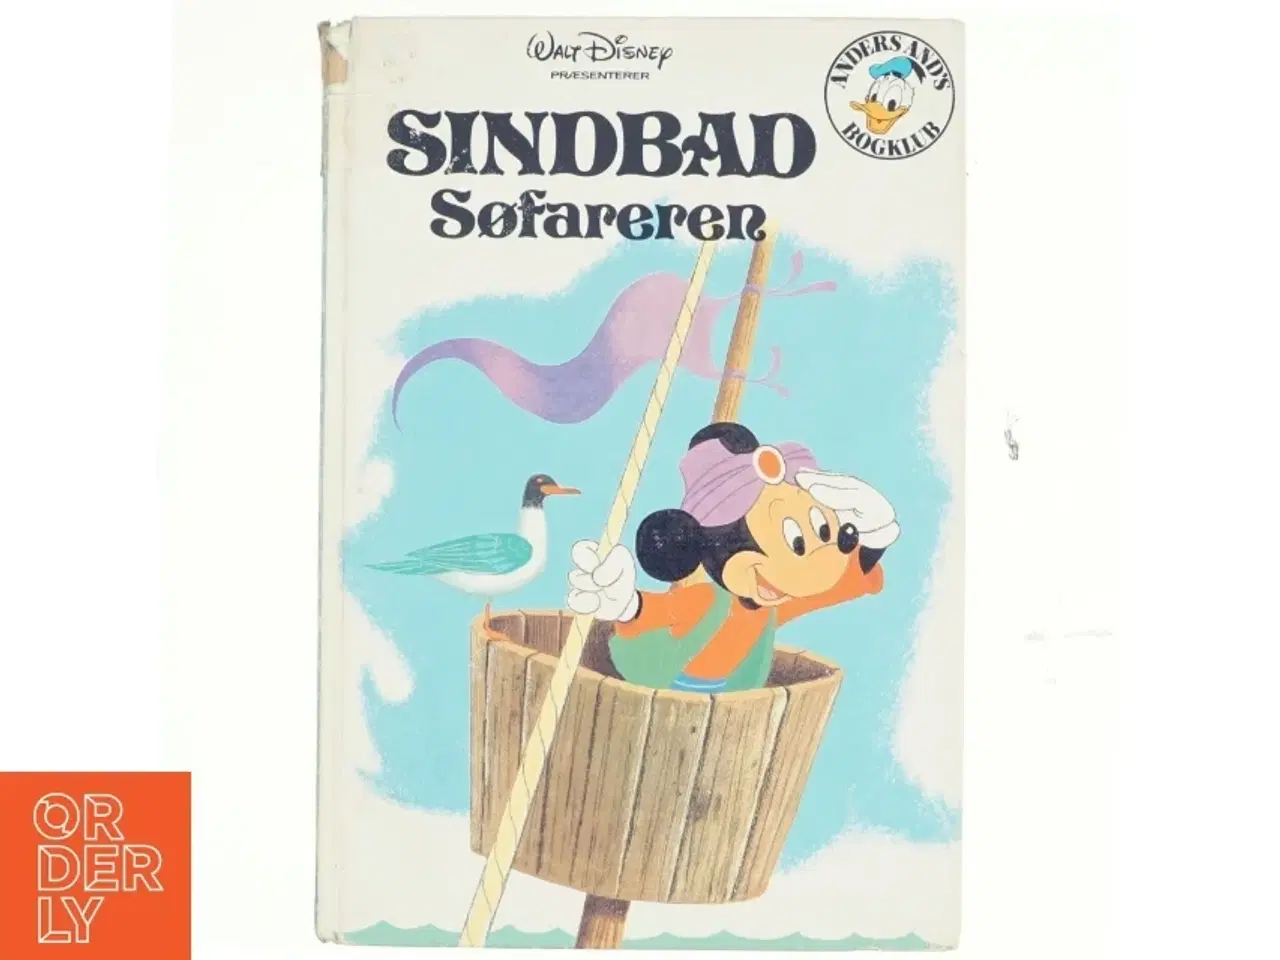 Billede 1 - Sindbad søfararen fra Walt Disney